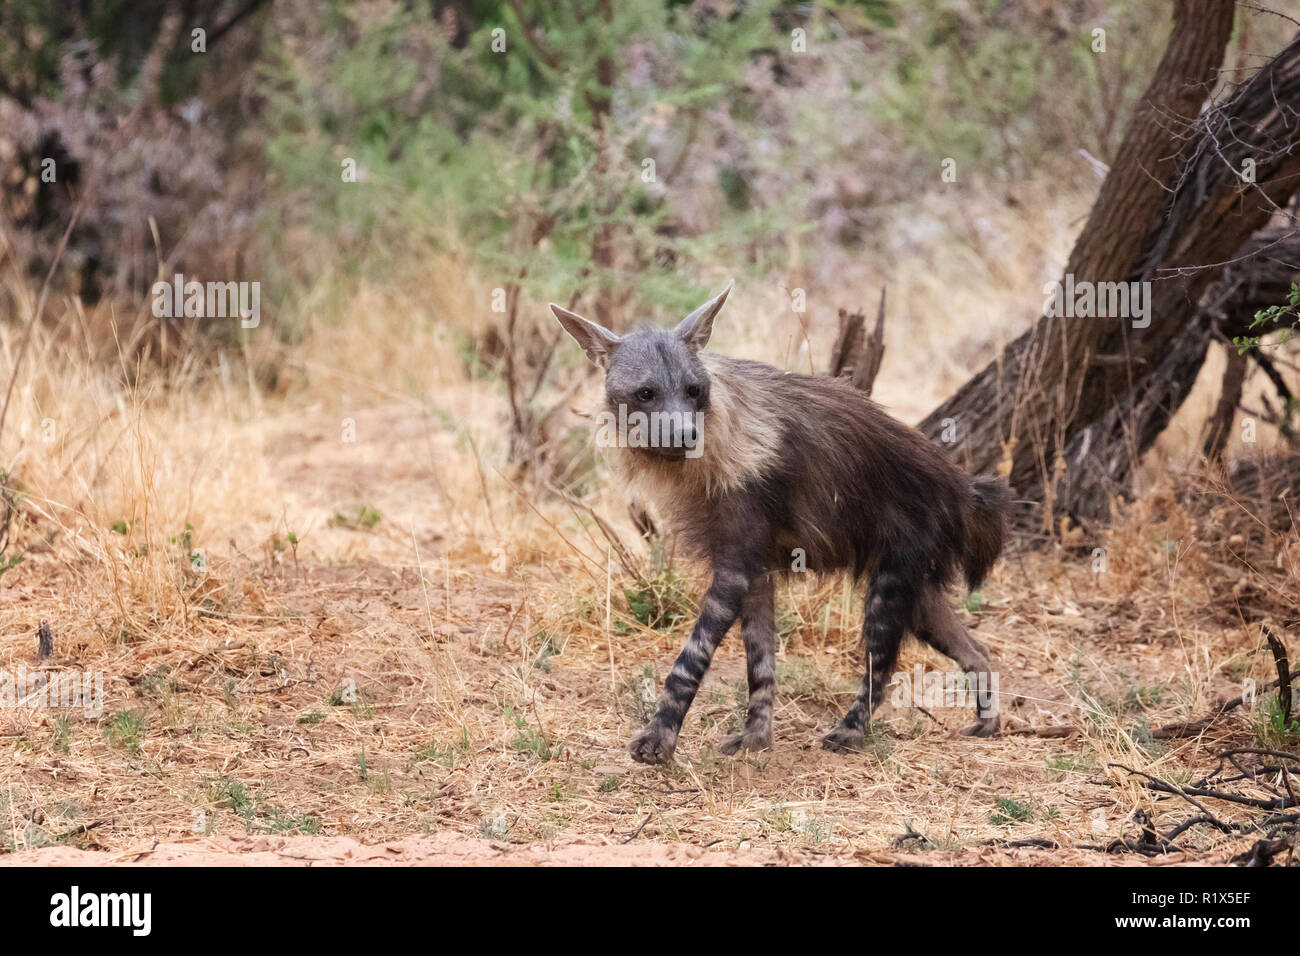 Hyène brune ( Hyaena brunnea ), l'un des profils avec vue latérale, exemple de la faune africaine, la Namibie Okonjima nature reserve, Afrique du Sud Banque D'Images